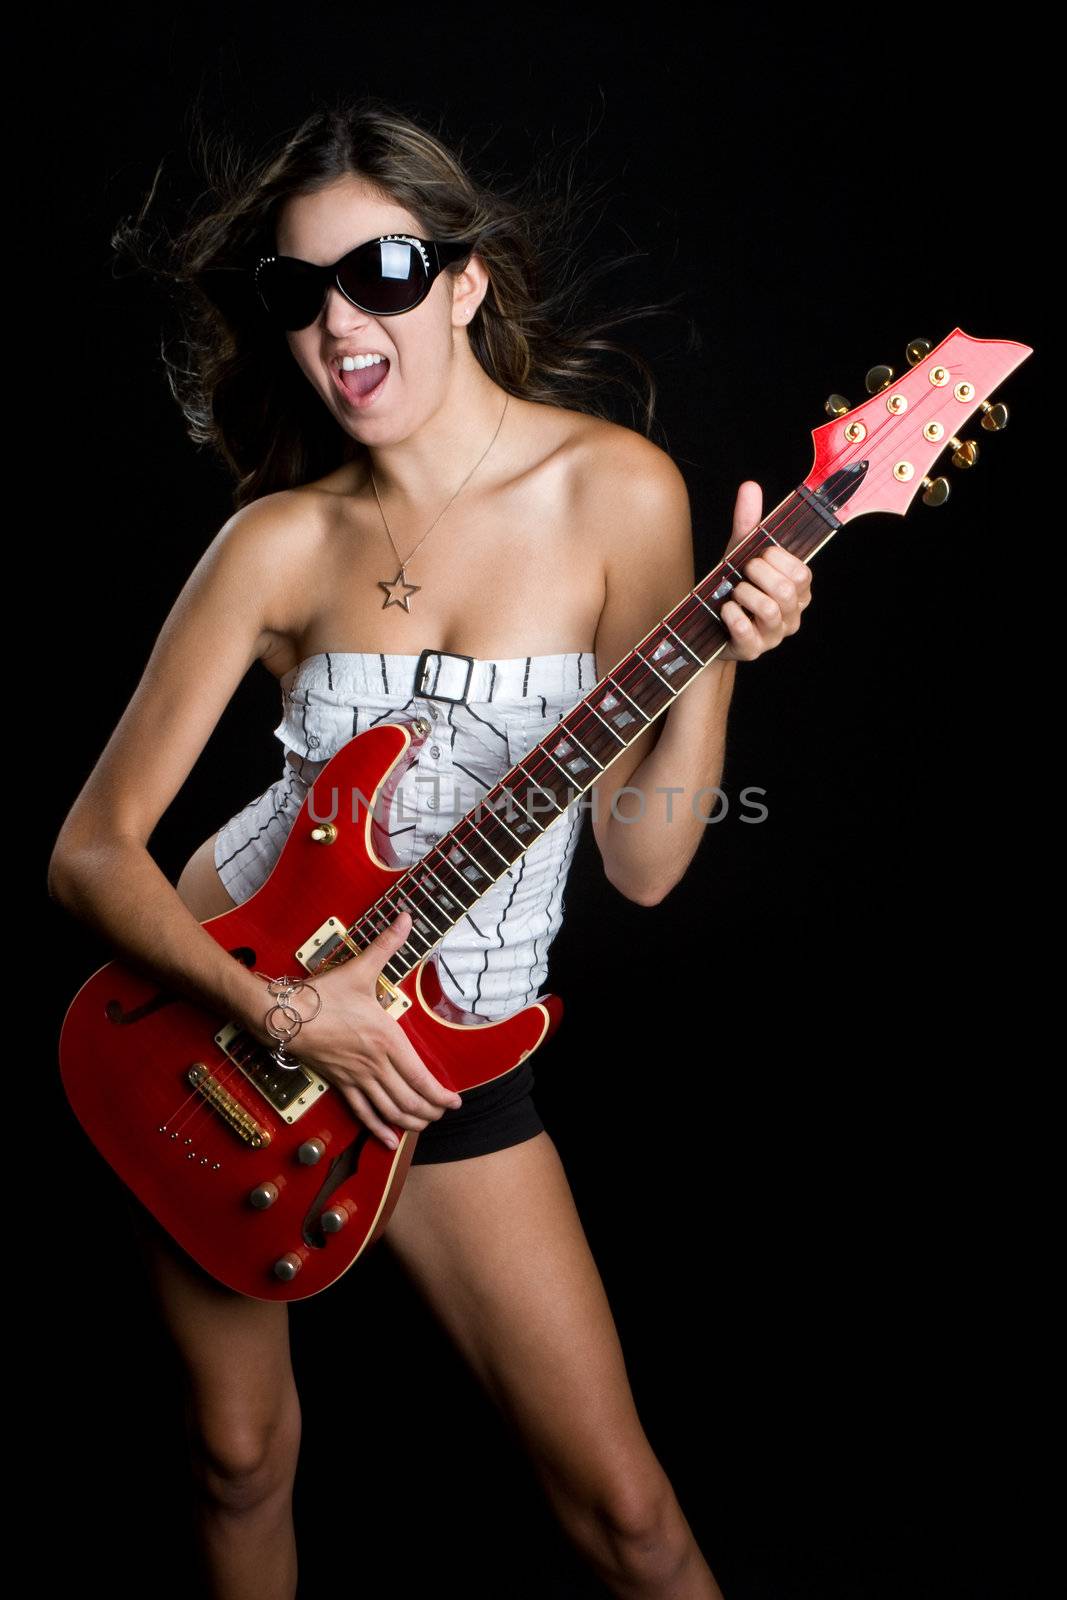 Rock Star Girl by keeweeboy